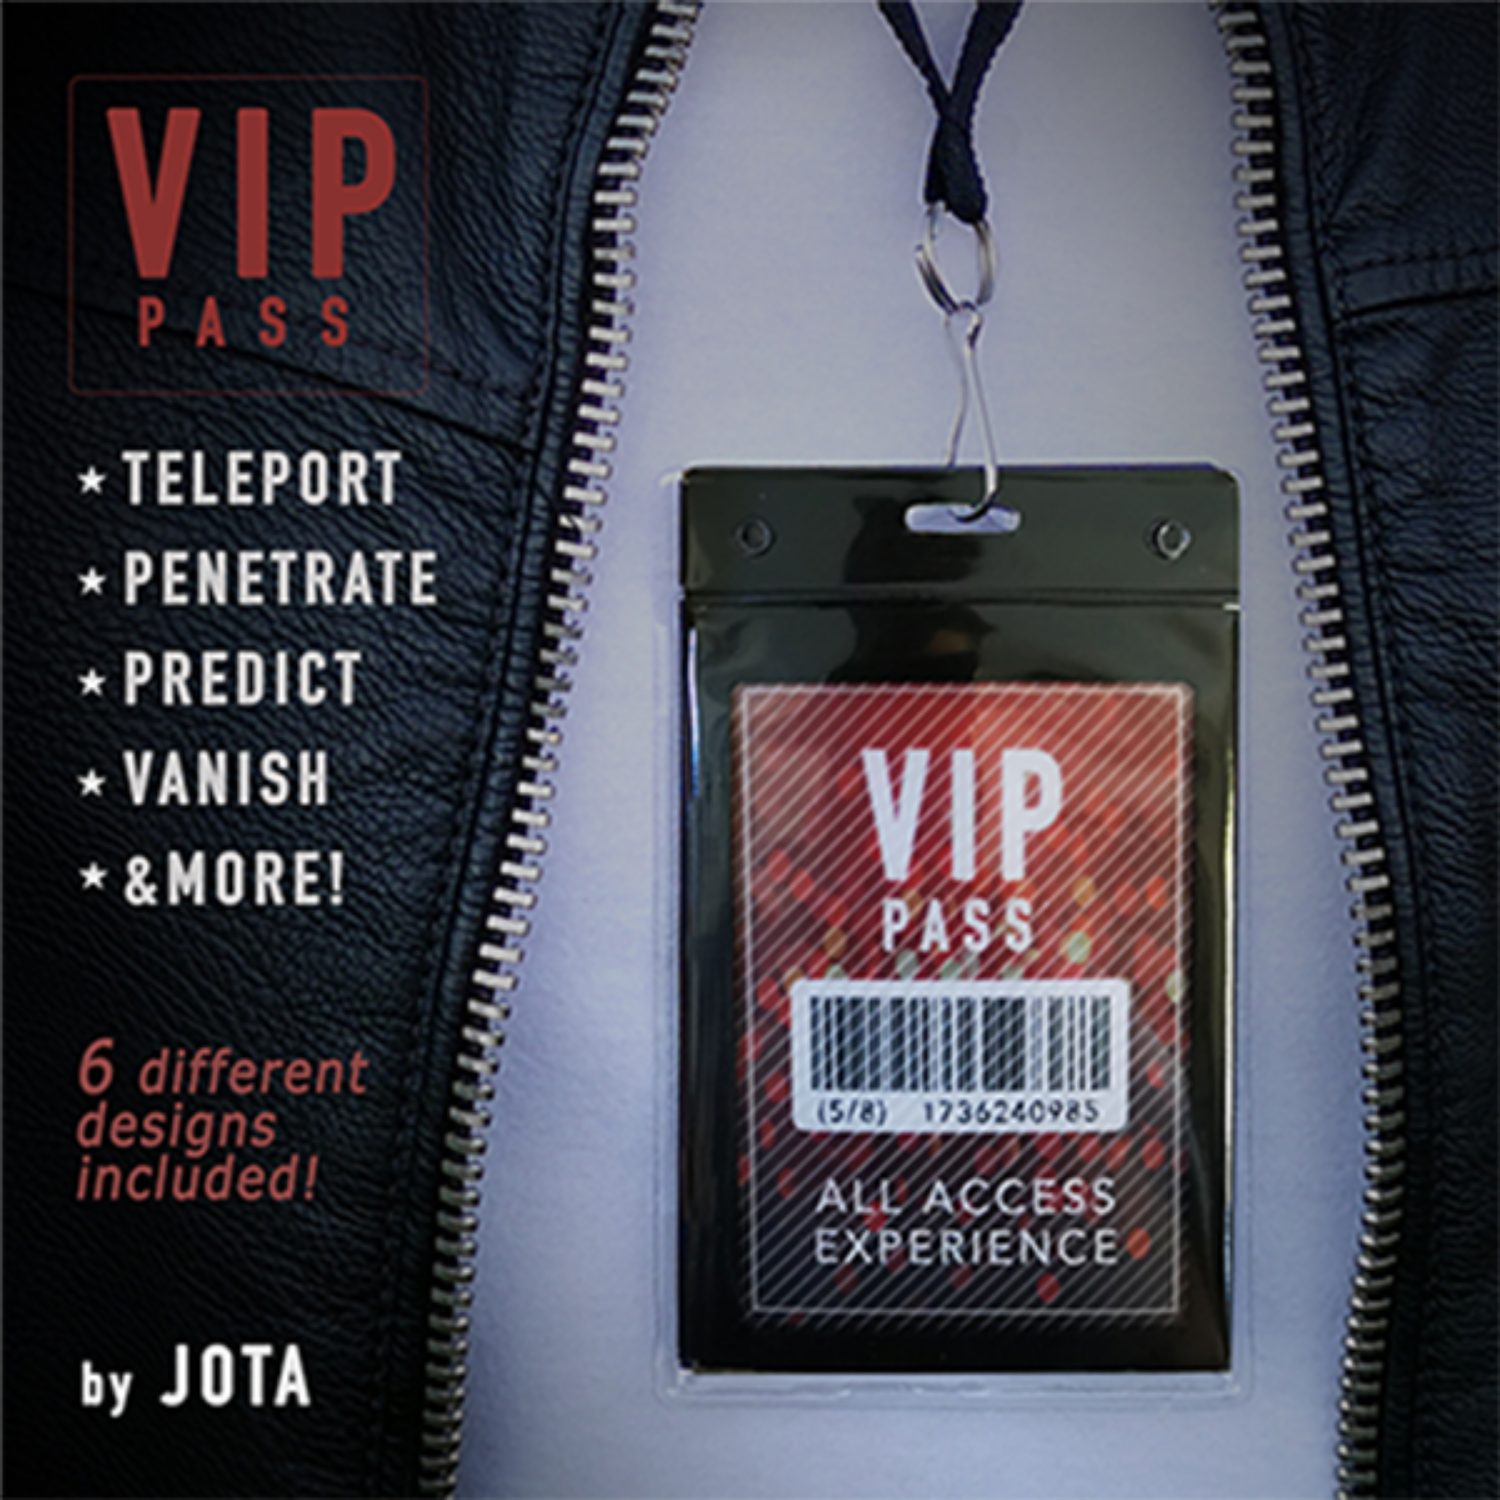 [브이아이피 패스]VIP PASS  by JOTA - 관객이 목에 걸고 있는 명찰 속으로 싸인한 동전을 집어넣는 마술을 연출해보십시오.